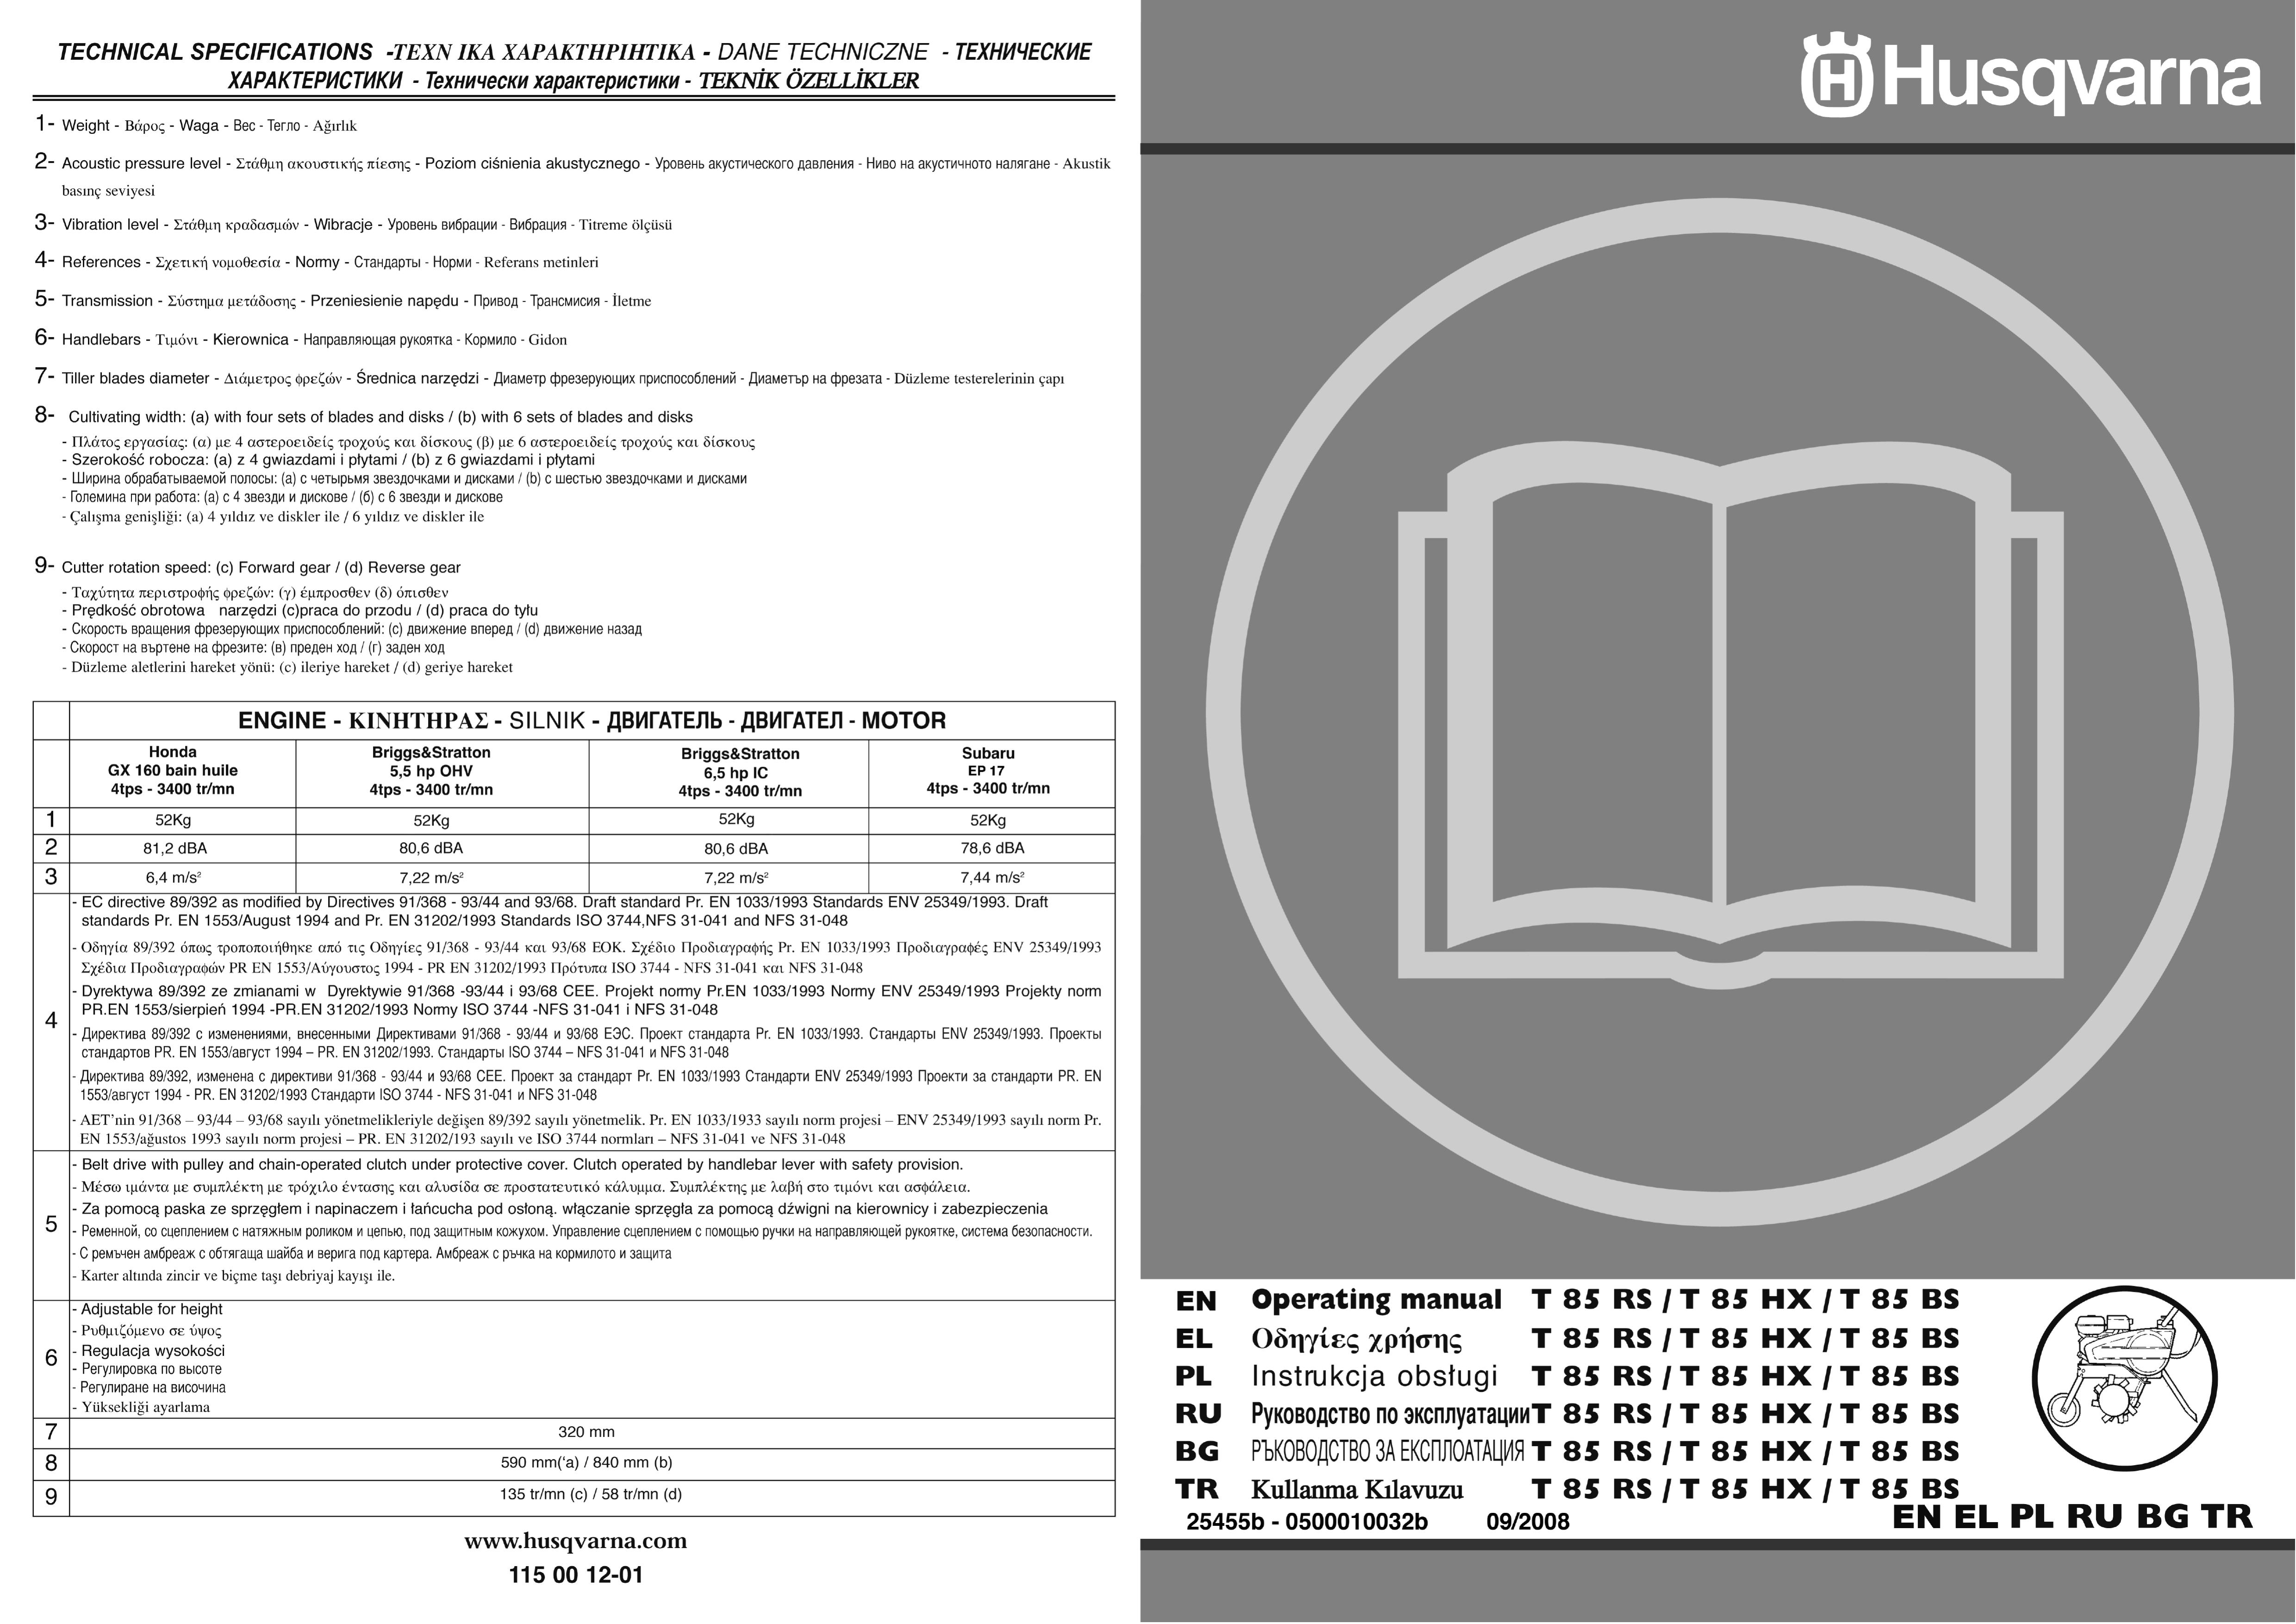 Husqvarna T85BS Tiller User Manual